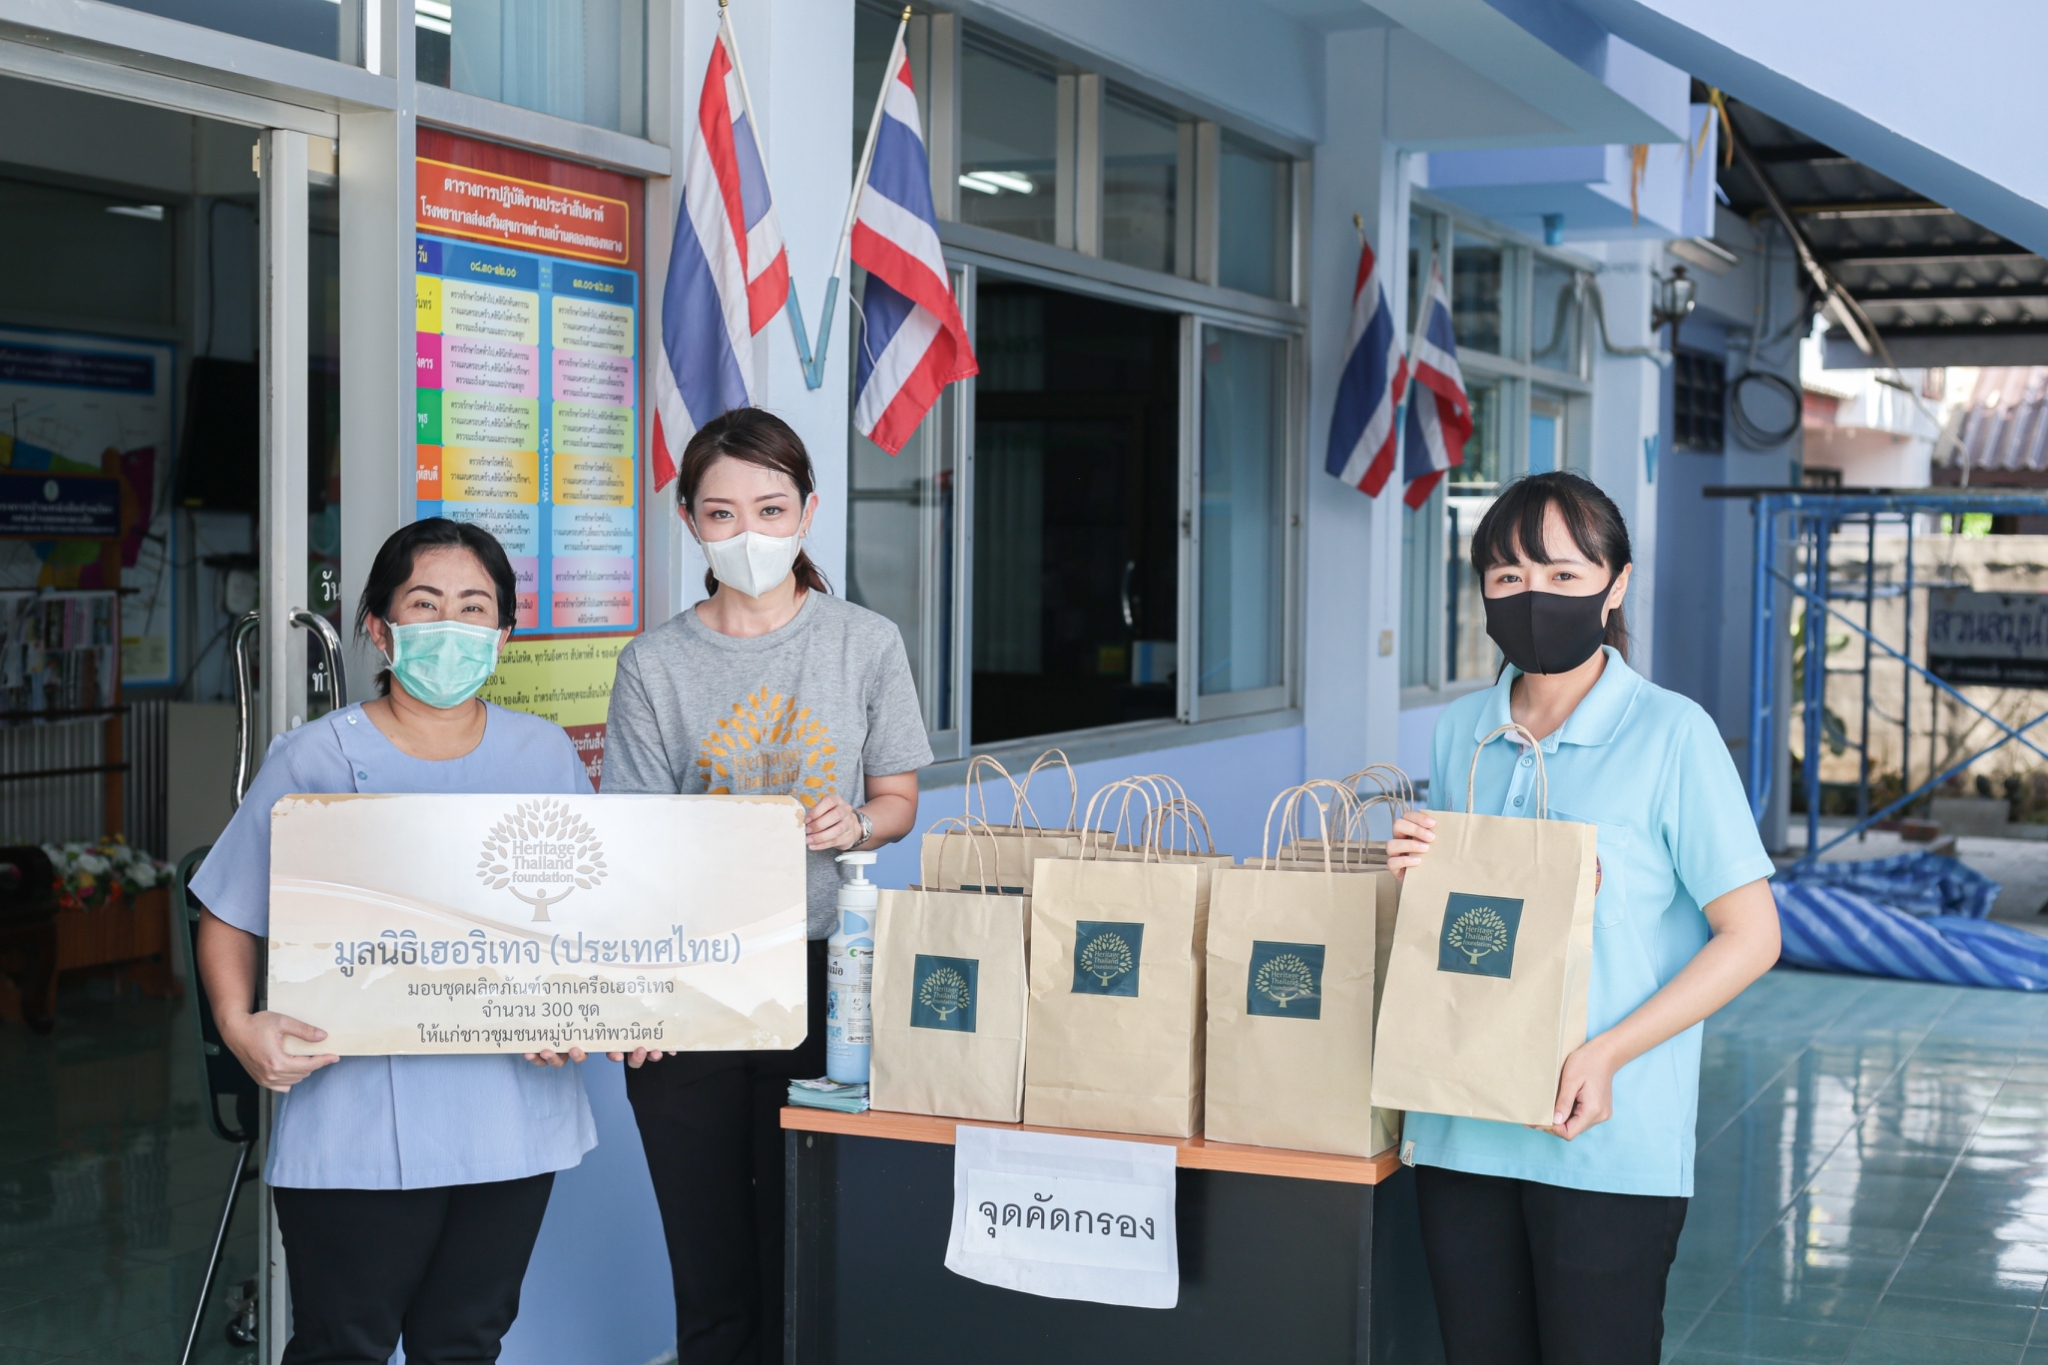 ภาพข่าว: มูลนิธิเฮอริเทจประเทศไทย ส่งมอบกำลังใจให้แก่บุคลากรทางการแพทย์และเจ้าหน้าที่ รพ.ส่งเสริมสุขภาพตำบลบ้านคลองทองหลาง จ.สมุทรสาคร